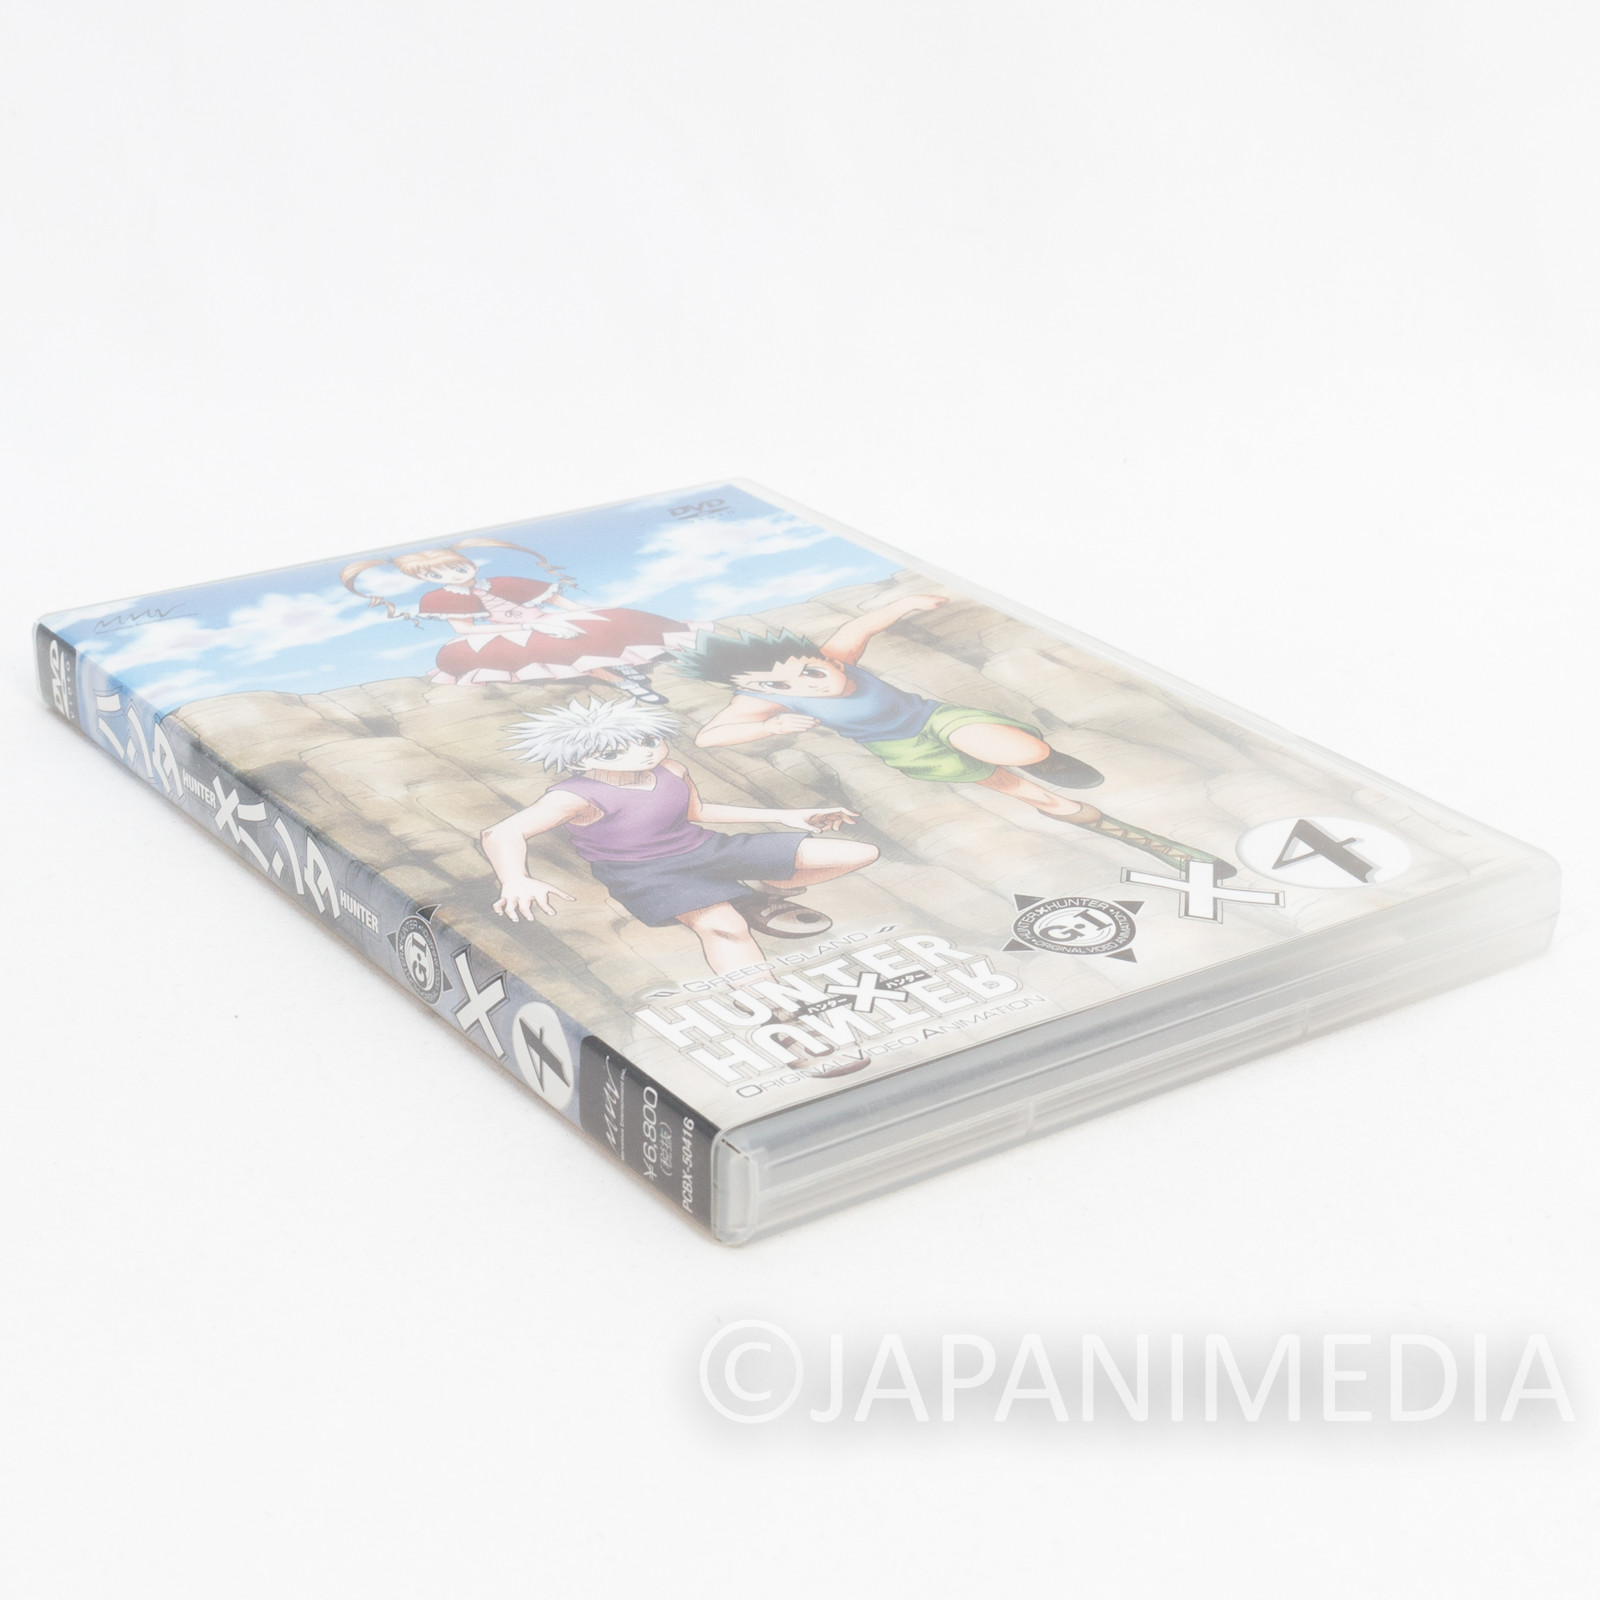 Anime DVD Shinobu Kamui Gaiden A la Carte Set of 7 Volumes